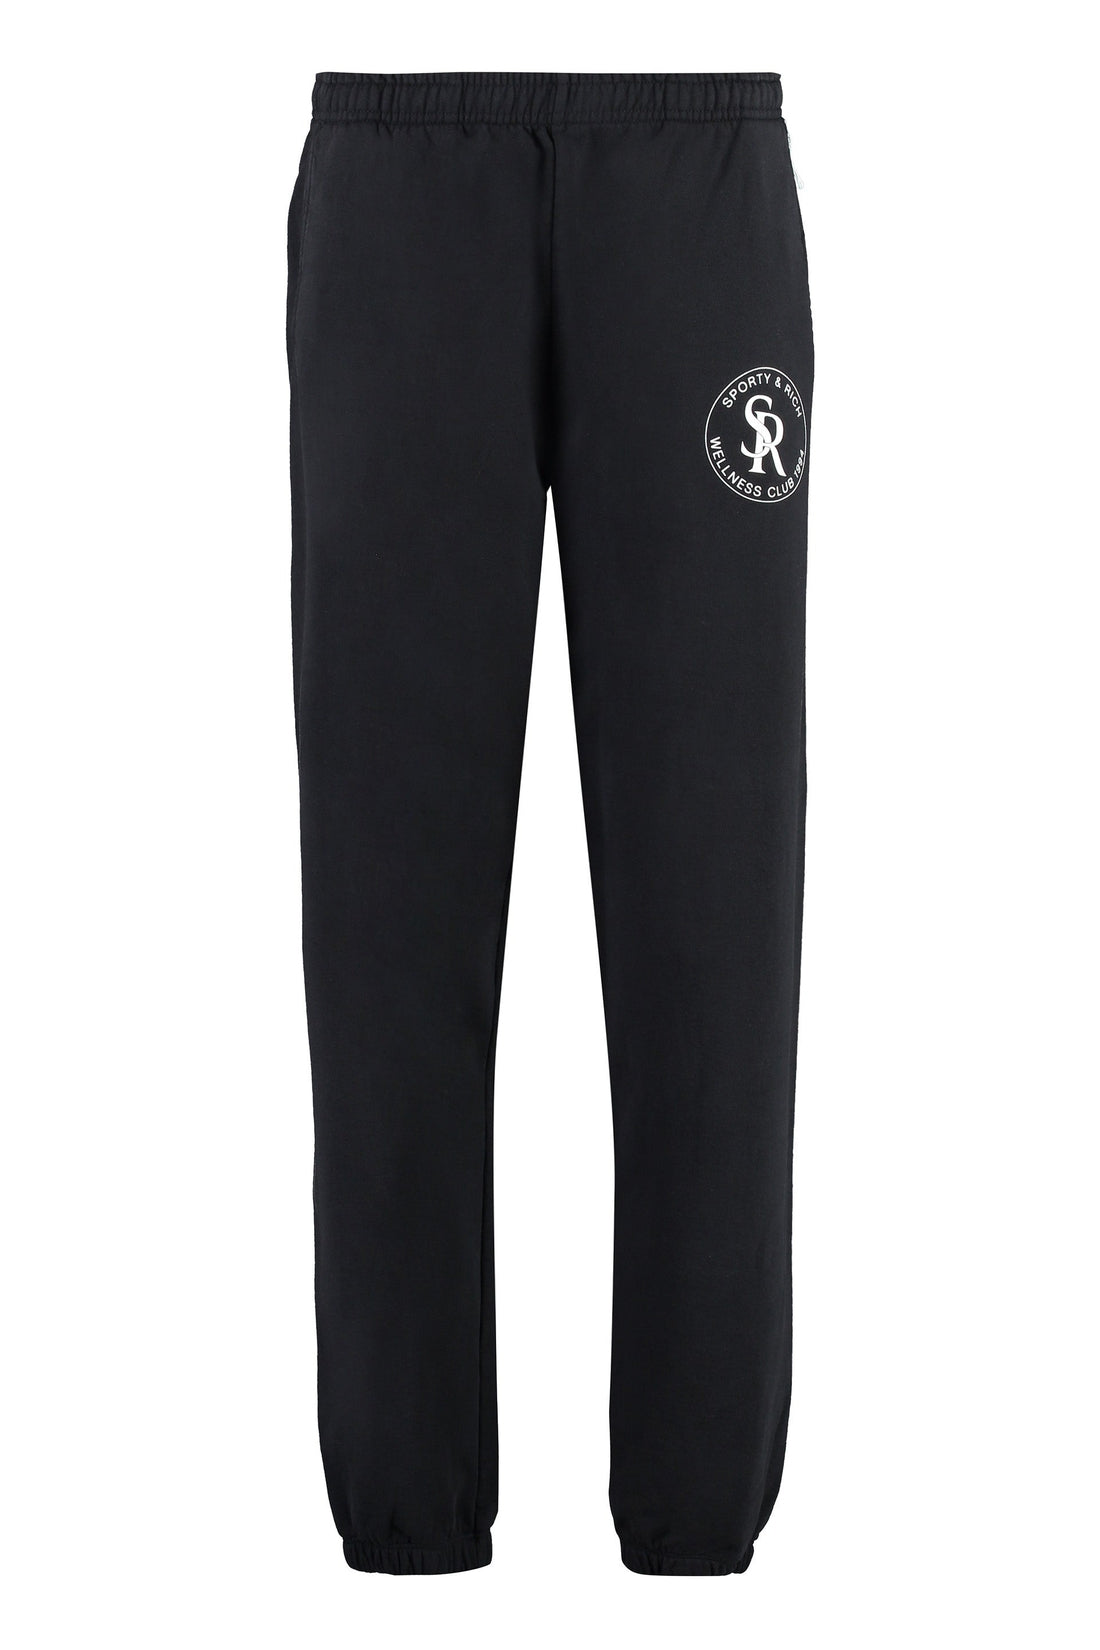 Sporty & Rich-OUTLET-SALE-Cotton trousers-ARCHIVIST